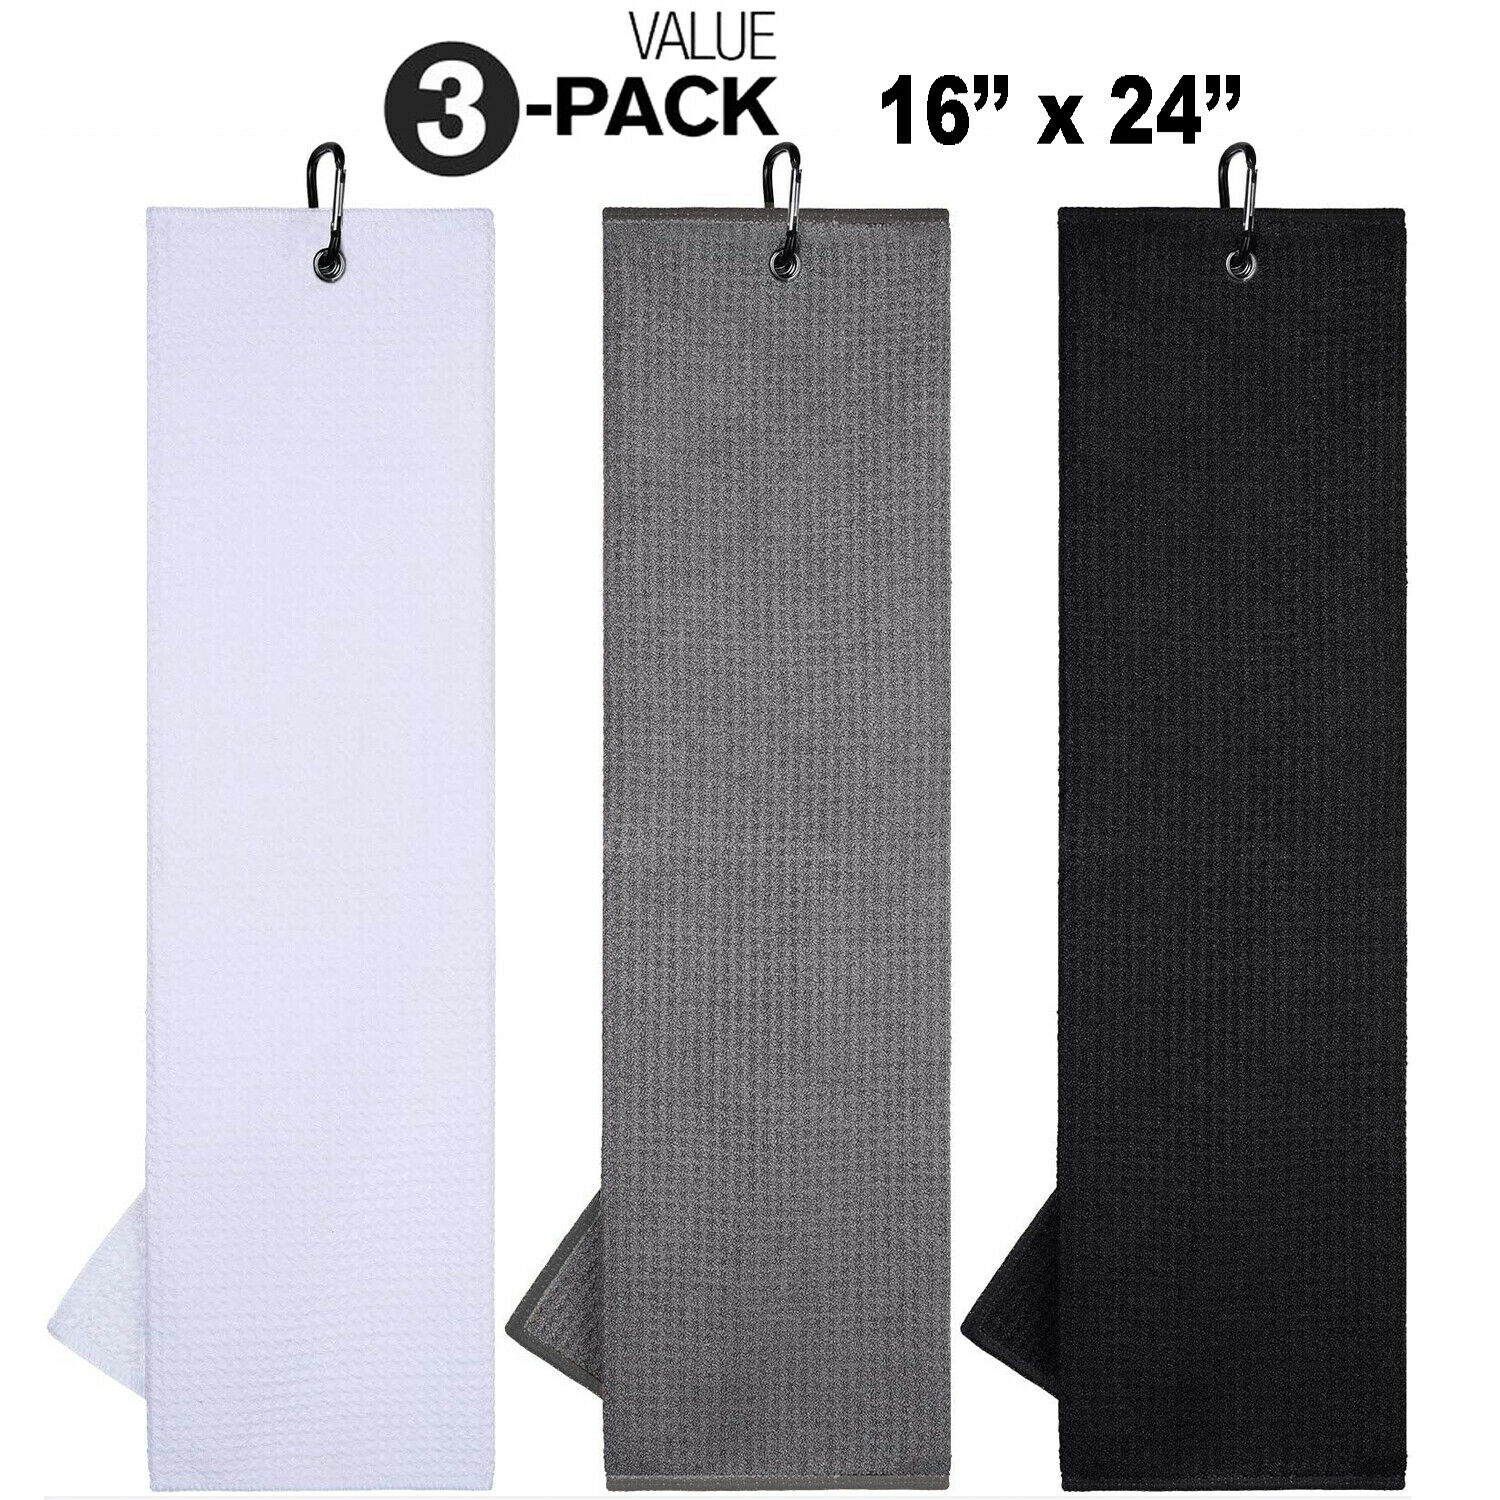 3 Pack of Premium Colored Microfiber Golf Towels 16